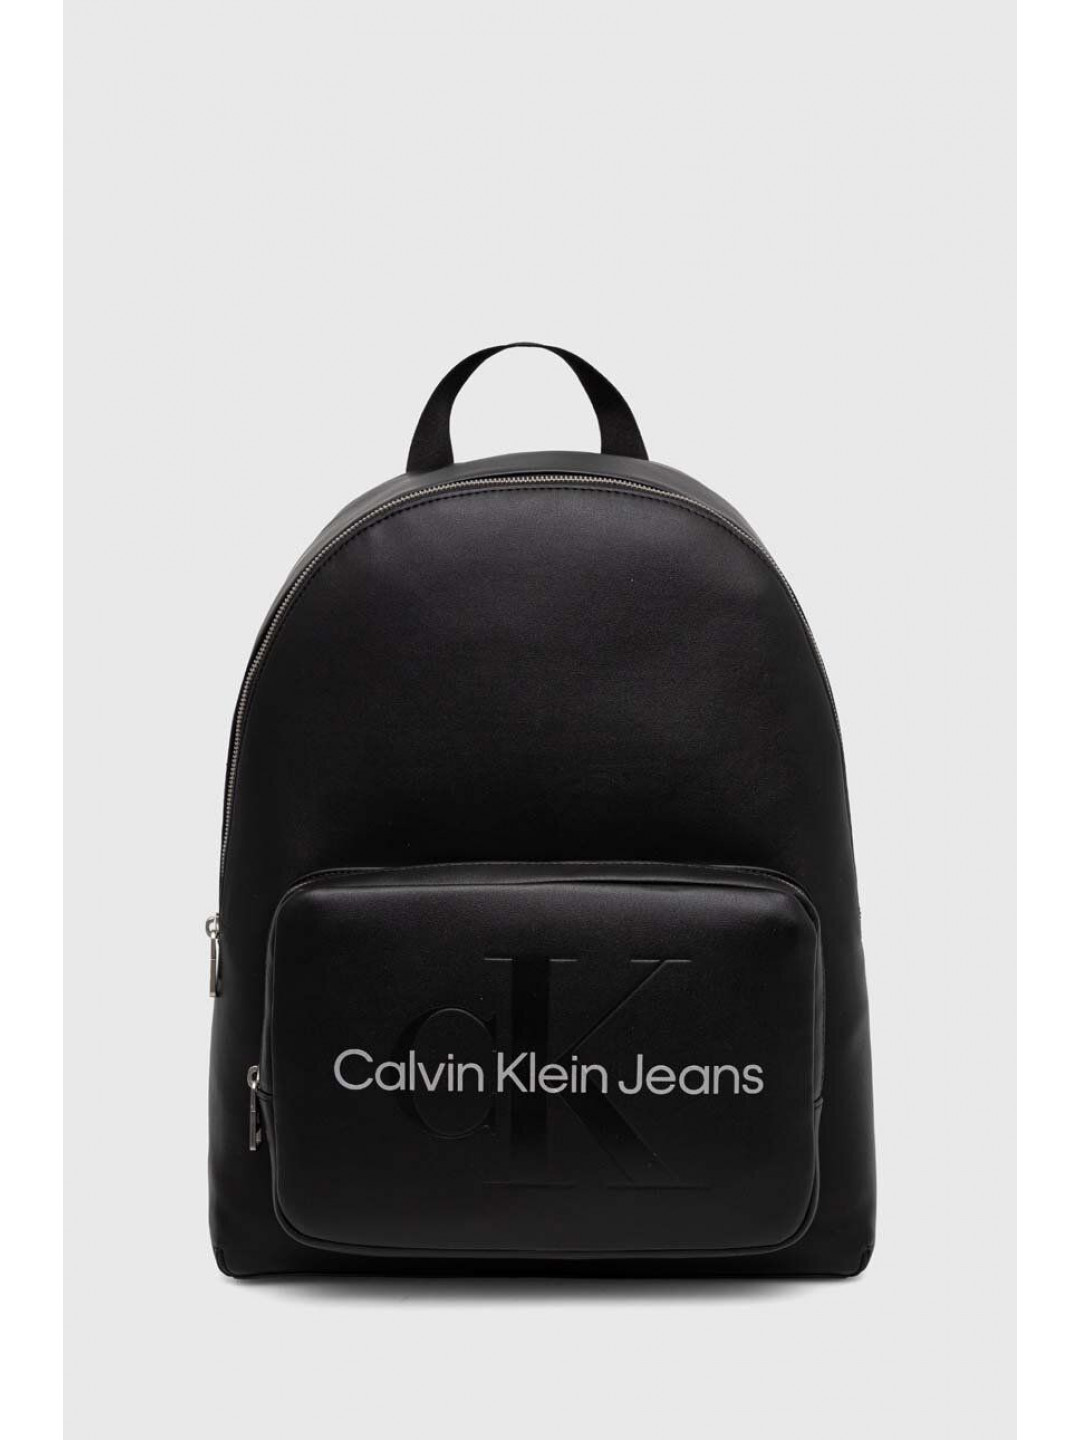 Batoh Calvin Klein Jeans dámský černá barva velký hladký